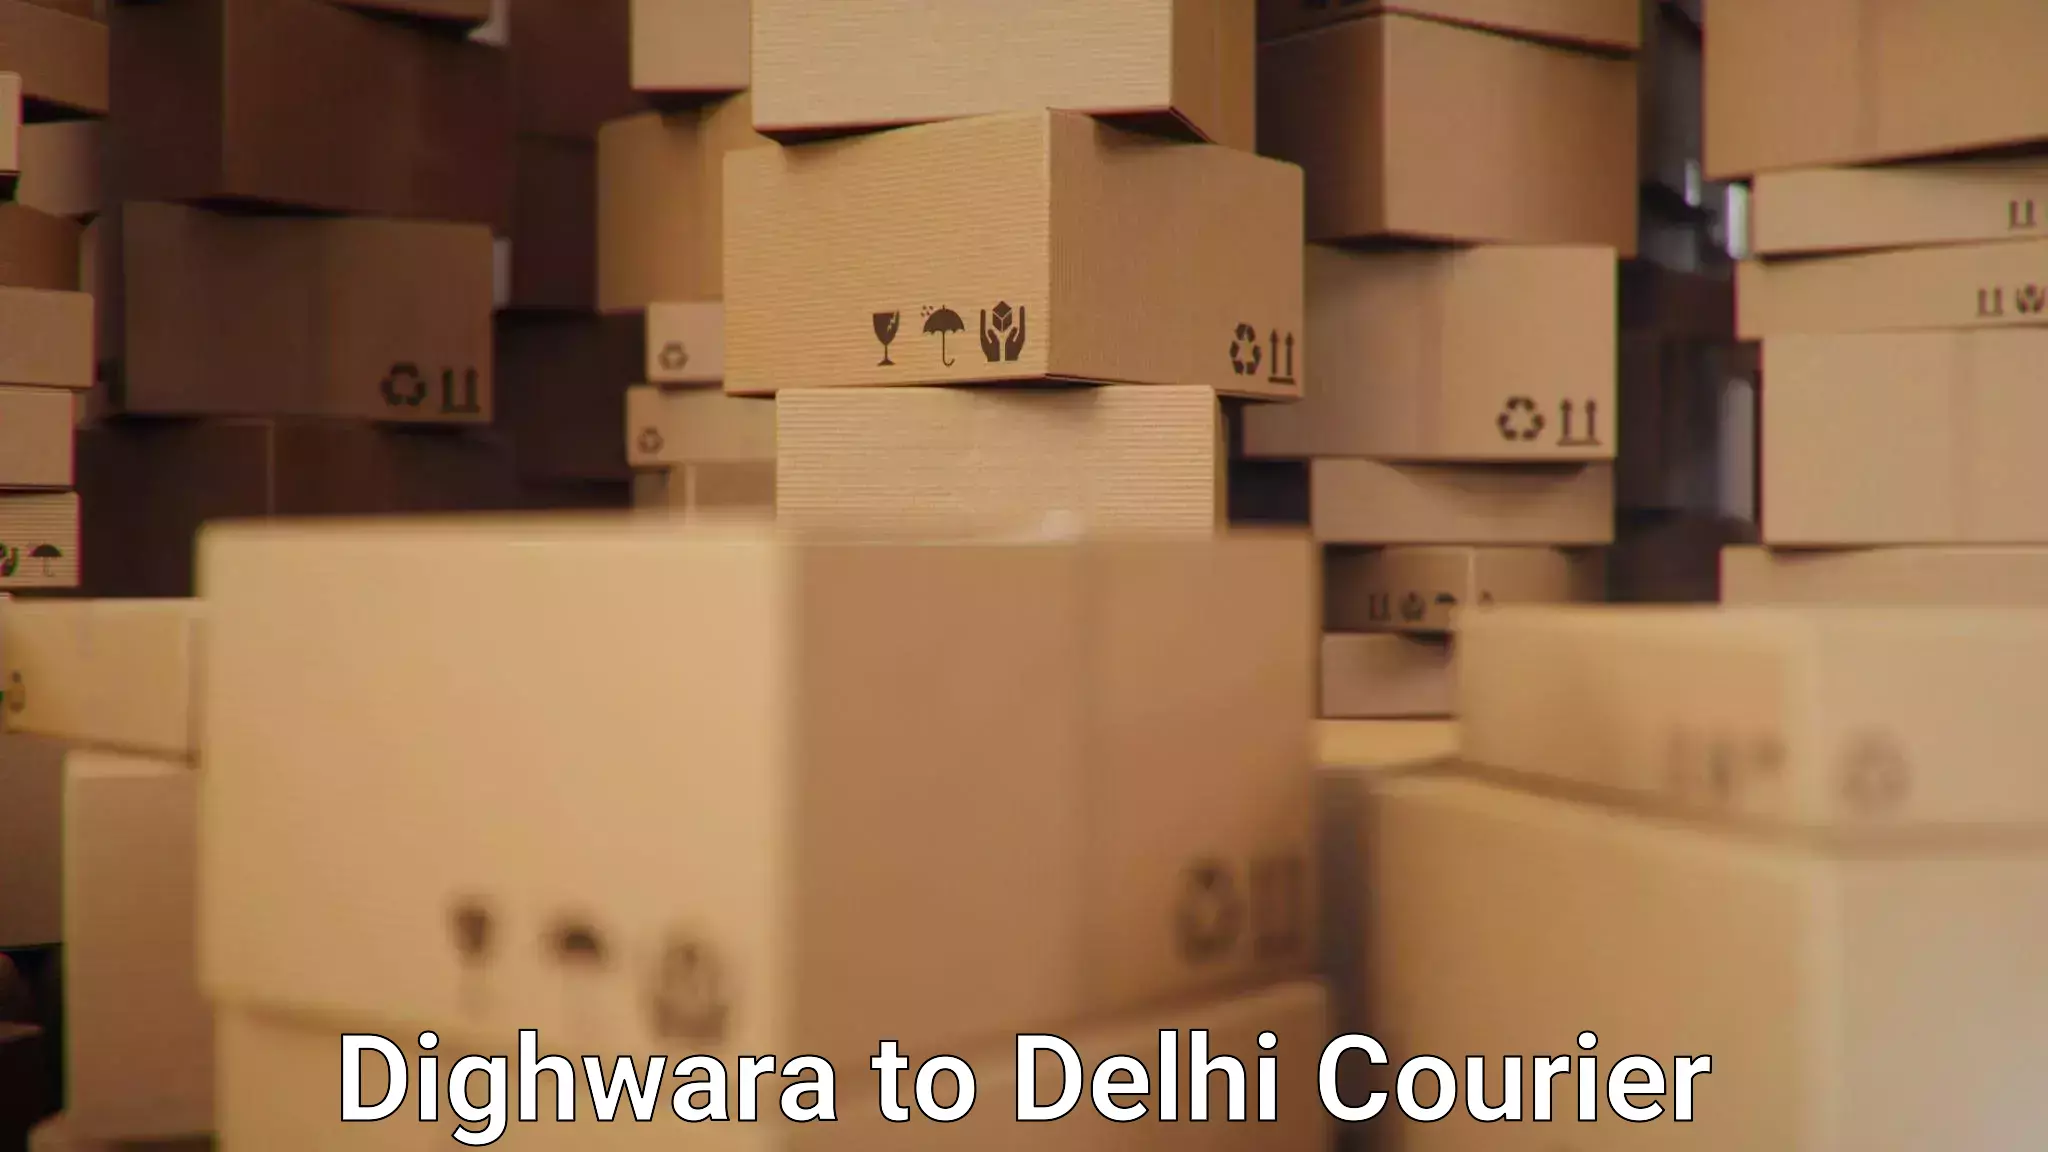 International courier networks Dighwara to IIT Delhi